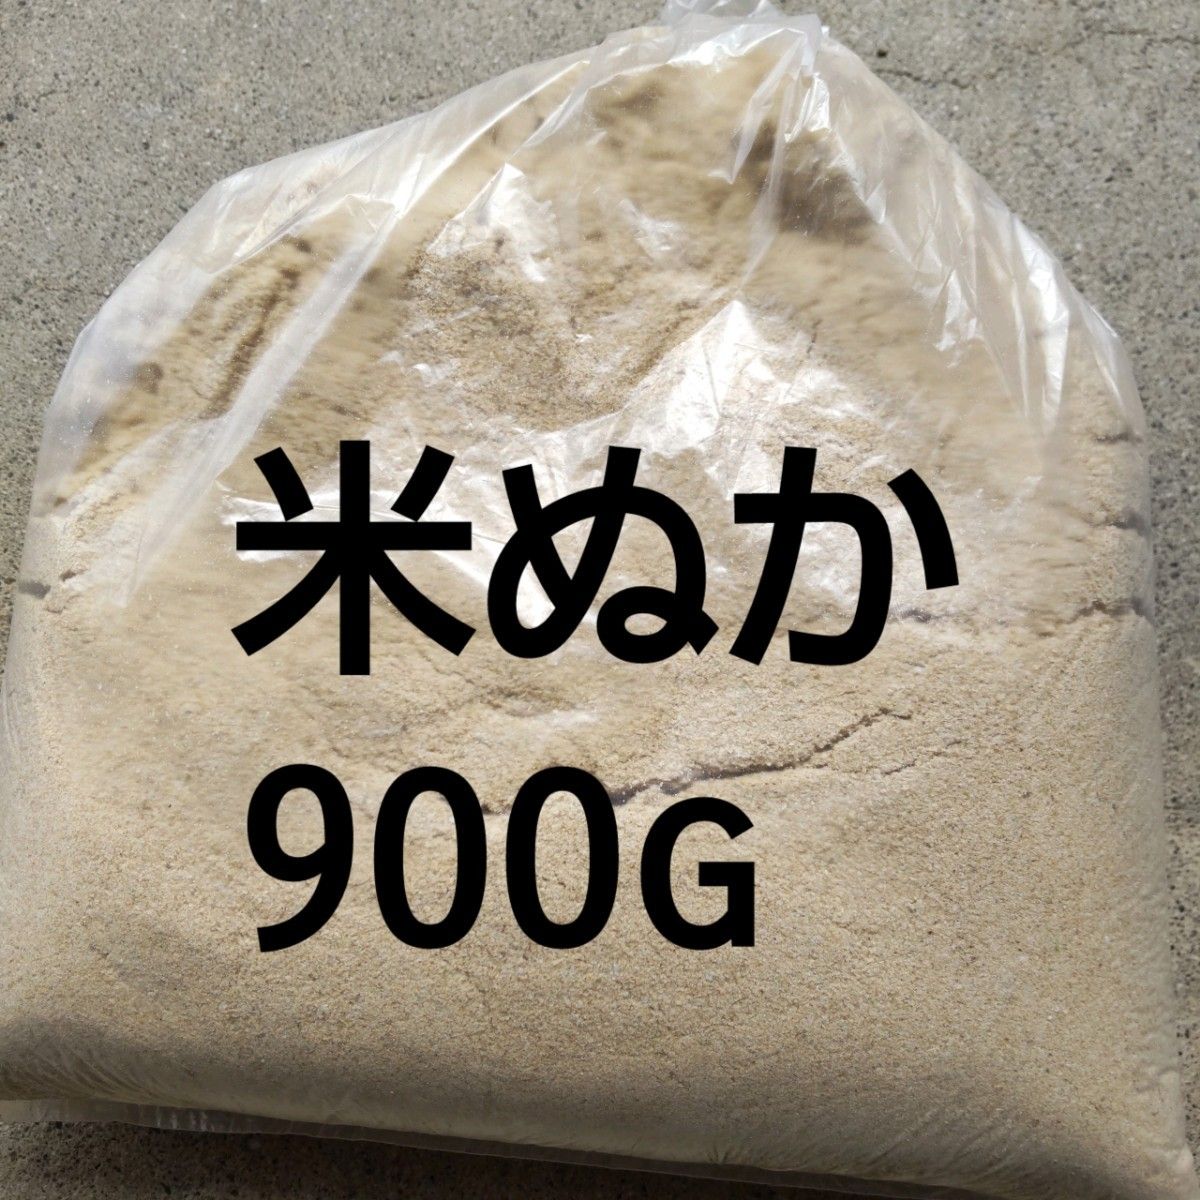 米ぬか900g★岐阜 ハツシモ玄米を精製した時にでた米ぬか4月19日に精製したものですユニパック袋で小分けに致します